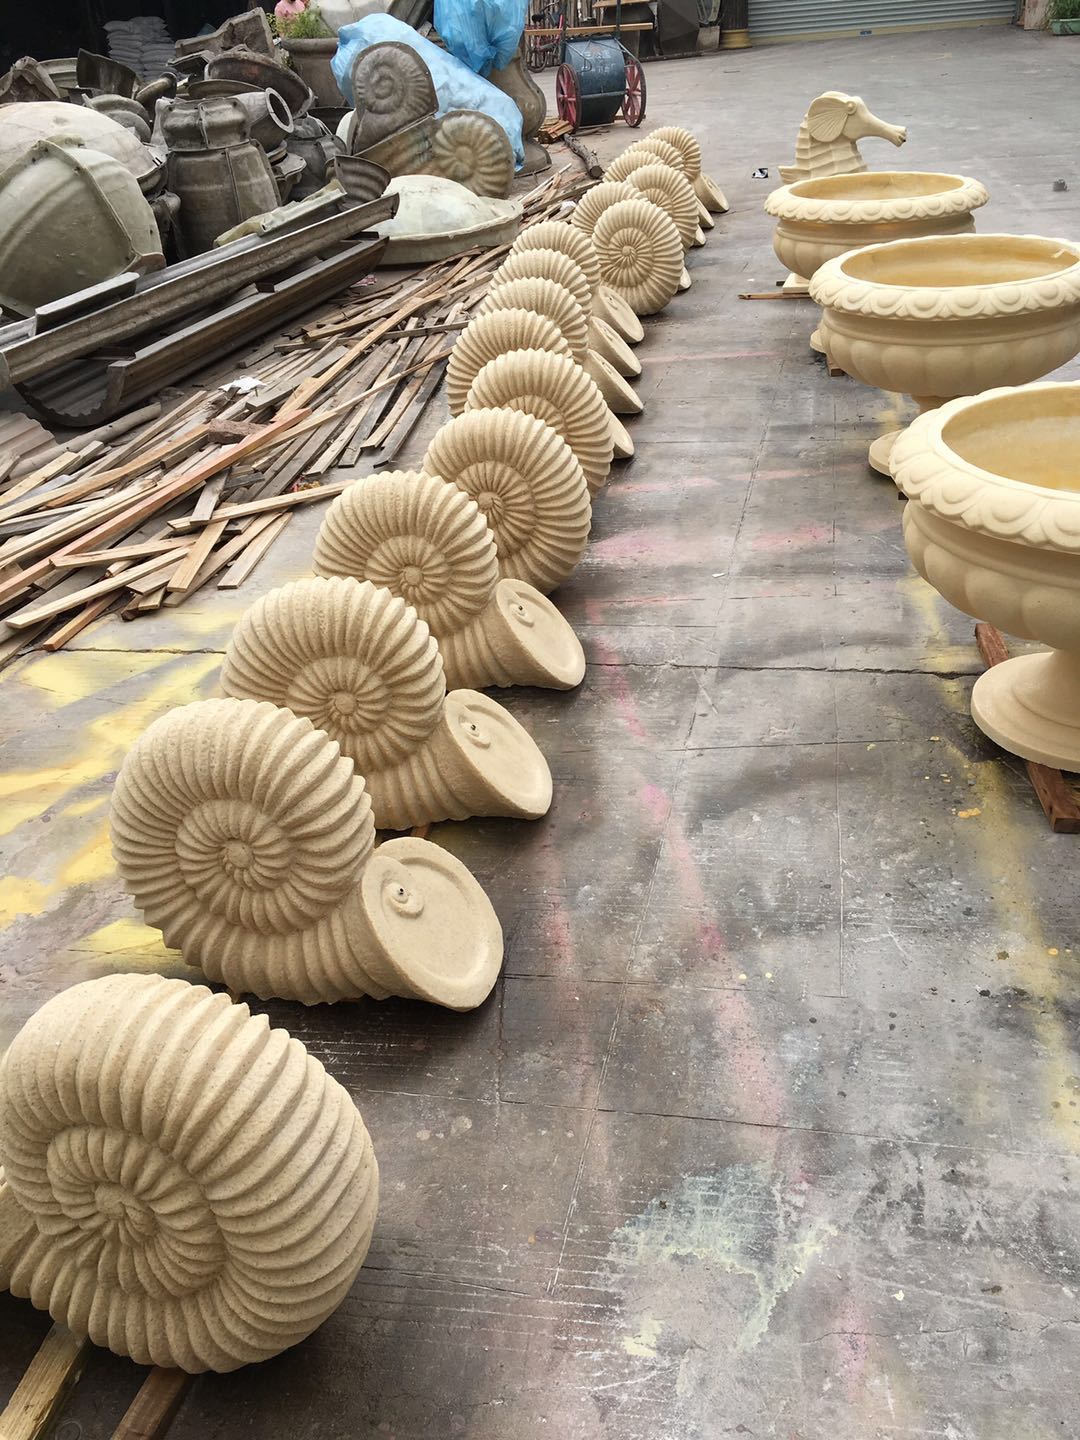 砂岩喷水海螺雕塑 海螺雕塑报价 海螺雕塑批发 海螺雕塑供应商 海螺雕塑生产厂家